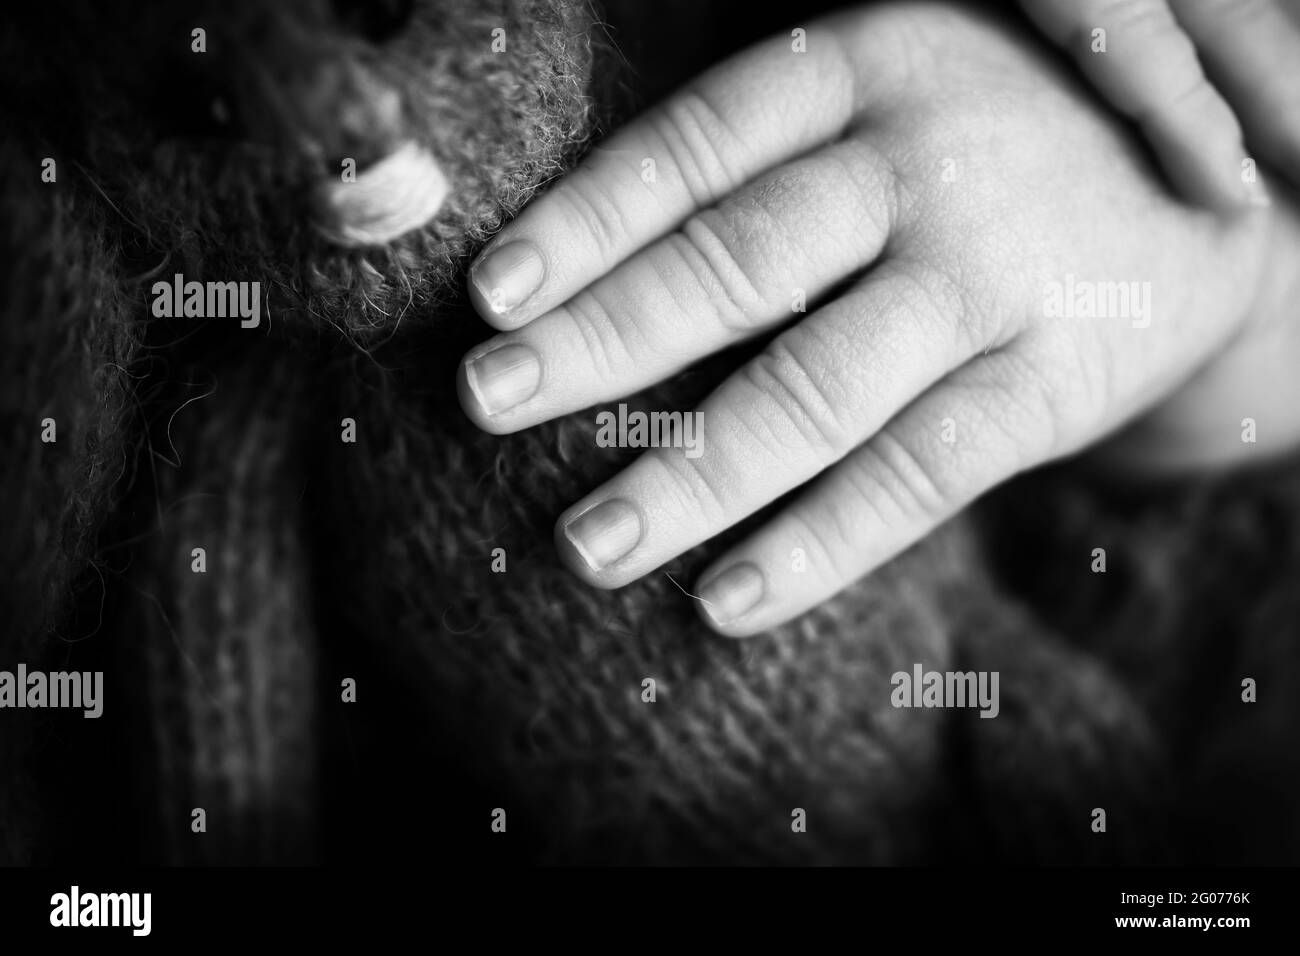 Main de l'enfant, doigts rapprochés. Nouveau-nés mains de bébé, concept de bonne enfance, soins de santé, FIV, hygiène. Photo en noir et blanc. Banque D'Images